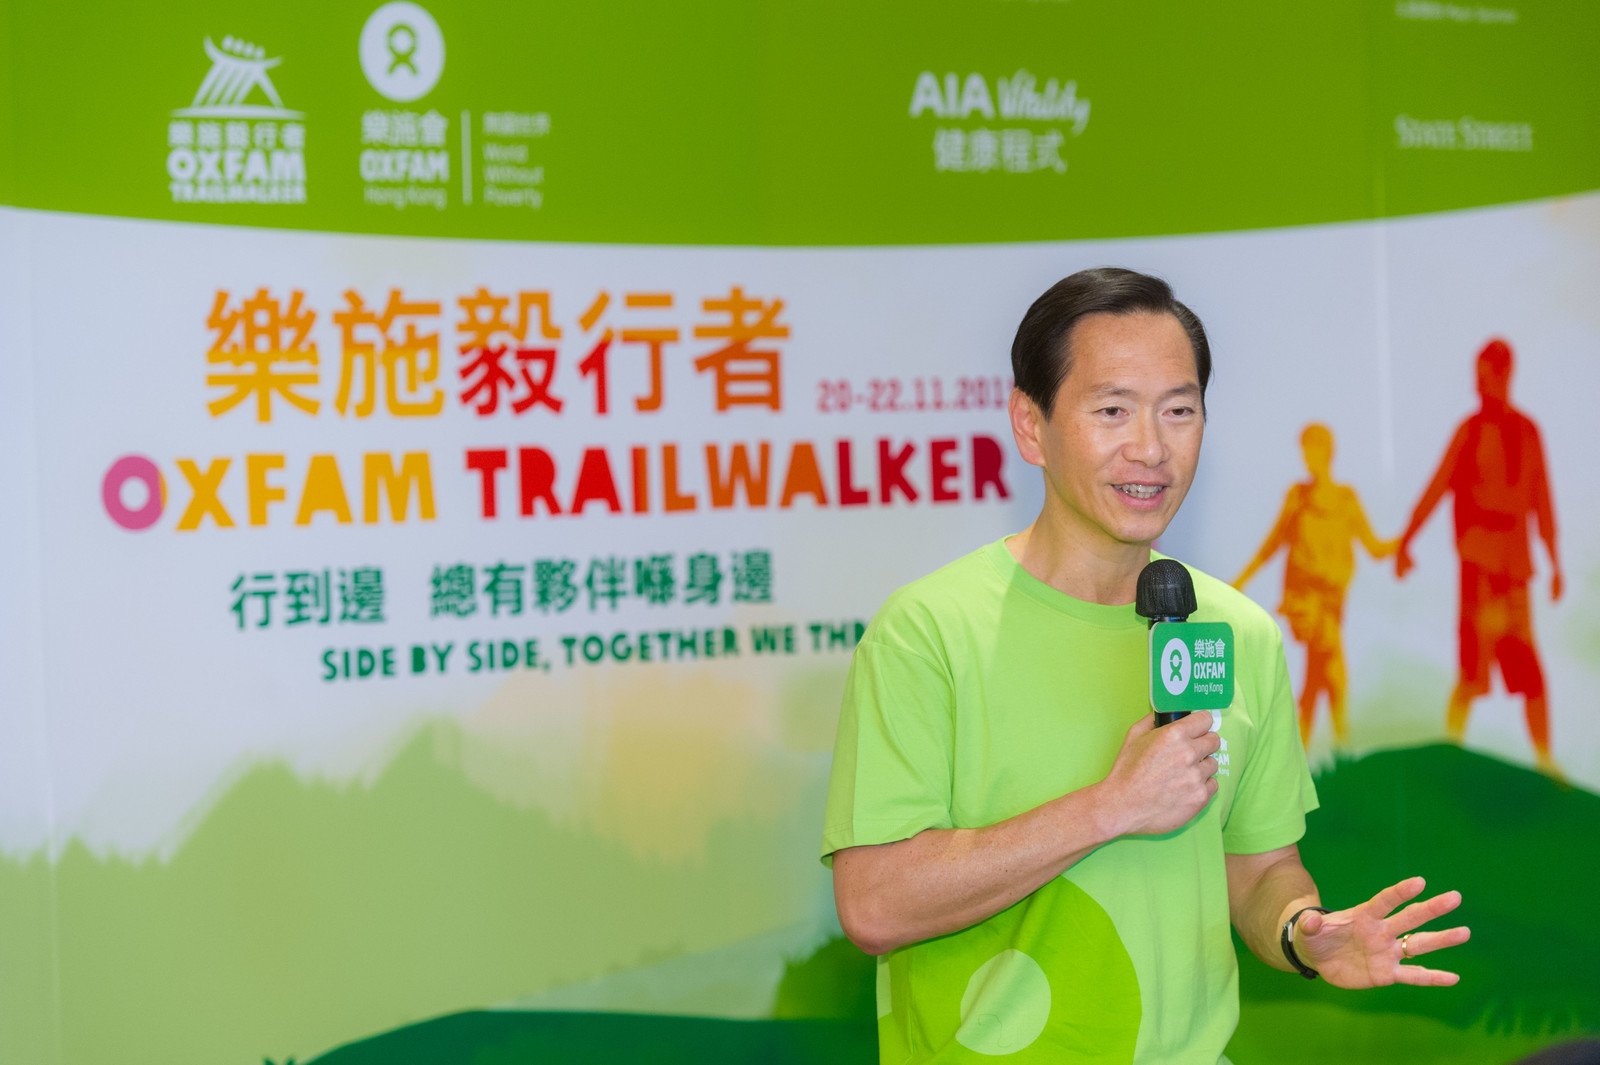 乐施毅行者筹委会主席陈智思于「乐施毅行者2015」记者会上致欢迎辞。